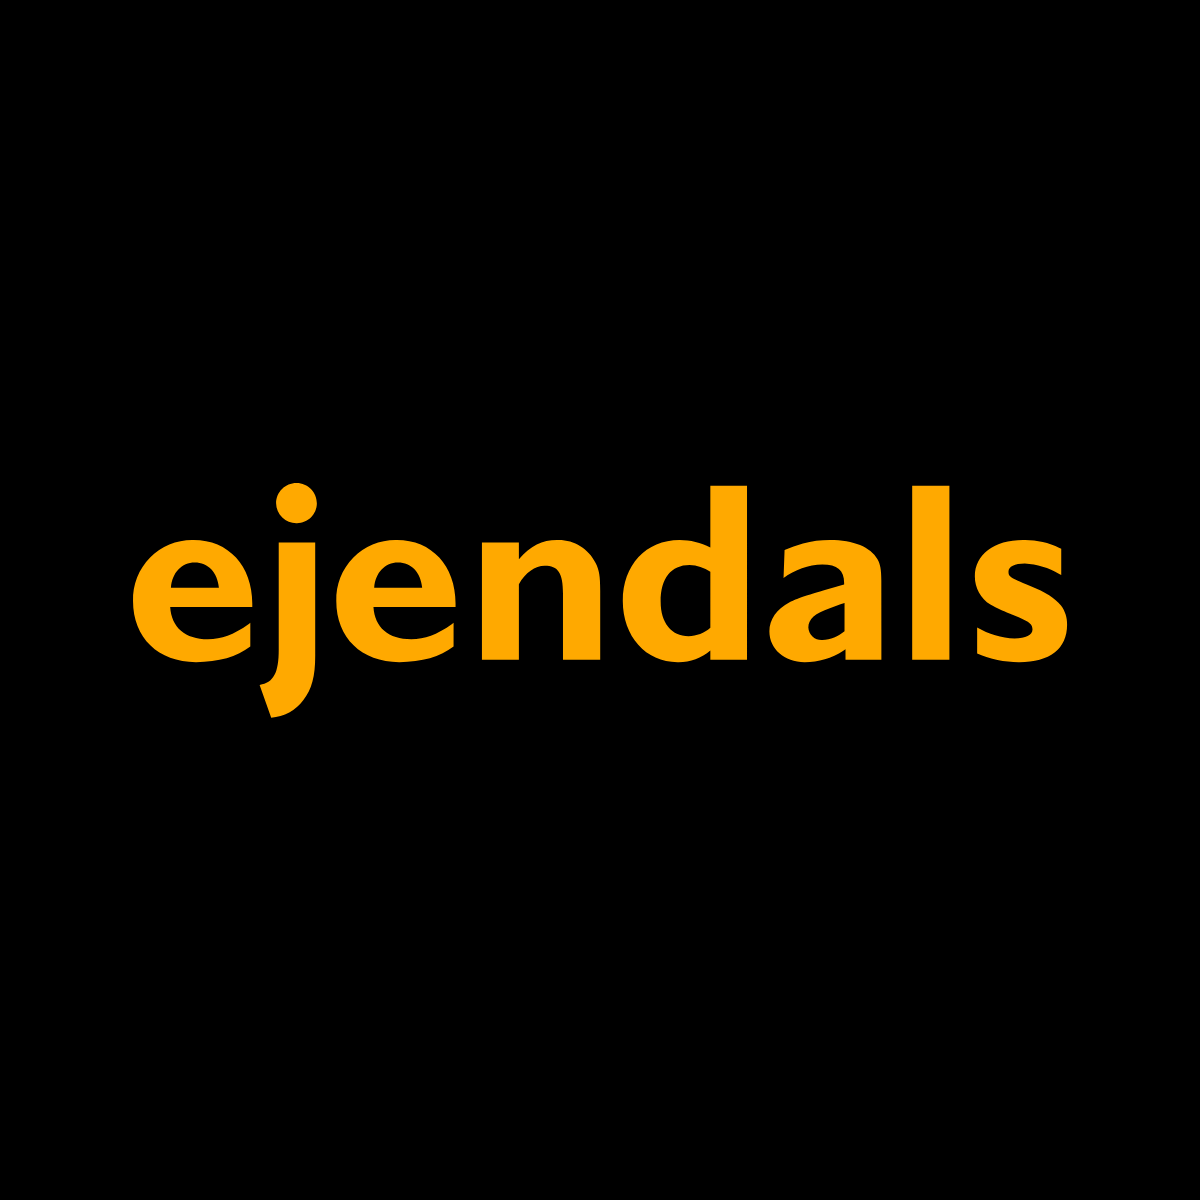 (c) Ejendals.com